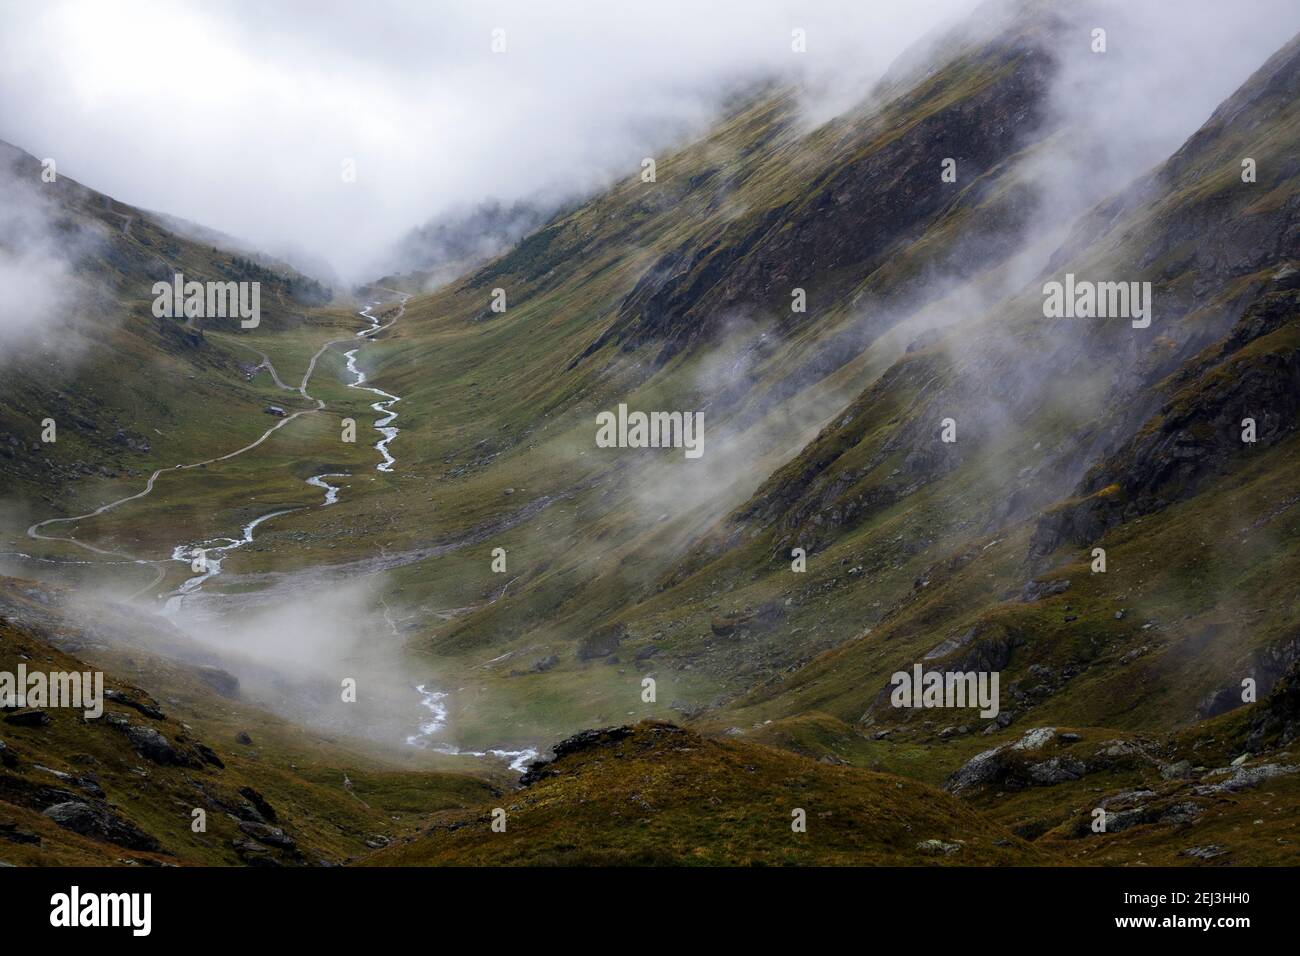 Vallée de Timmel (Timmeltal). Torrent alpin. Des nuages évocateurs. Groupe Venediger. Virginie. Alpes autrichiennes. Europe. Banque D'Images